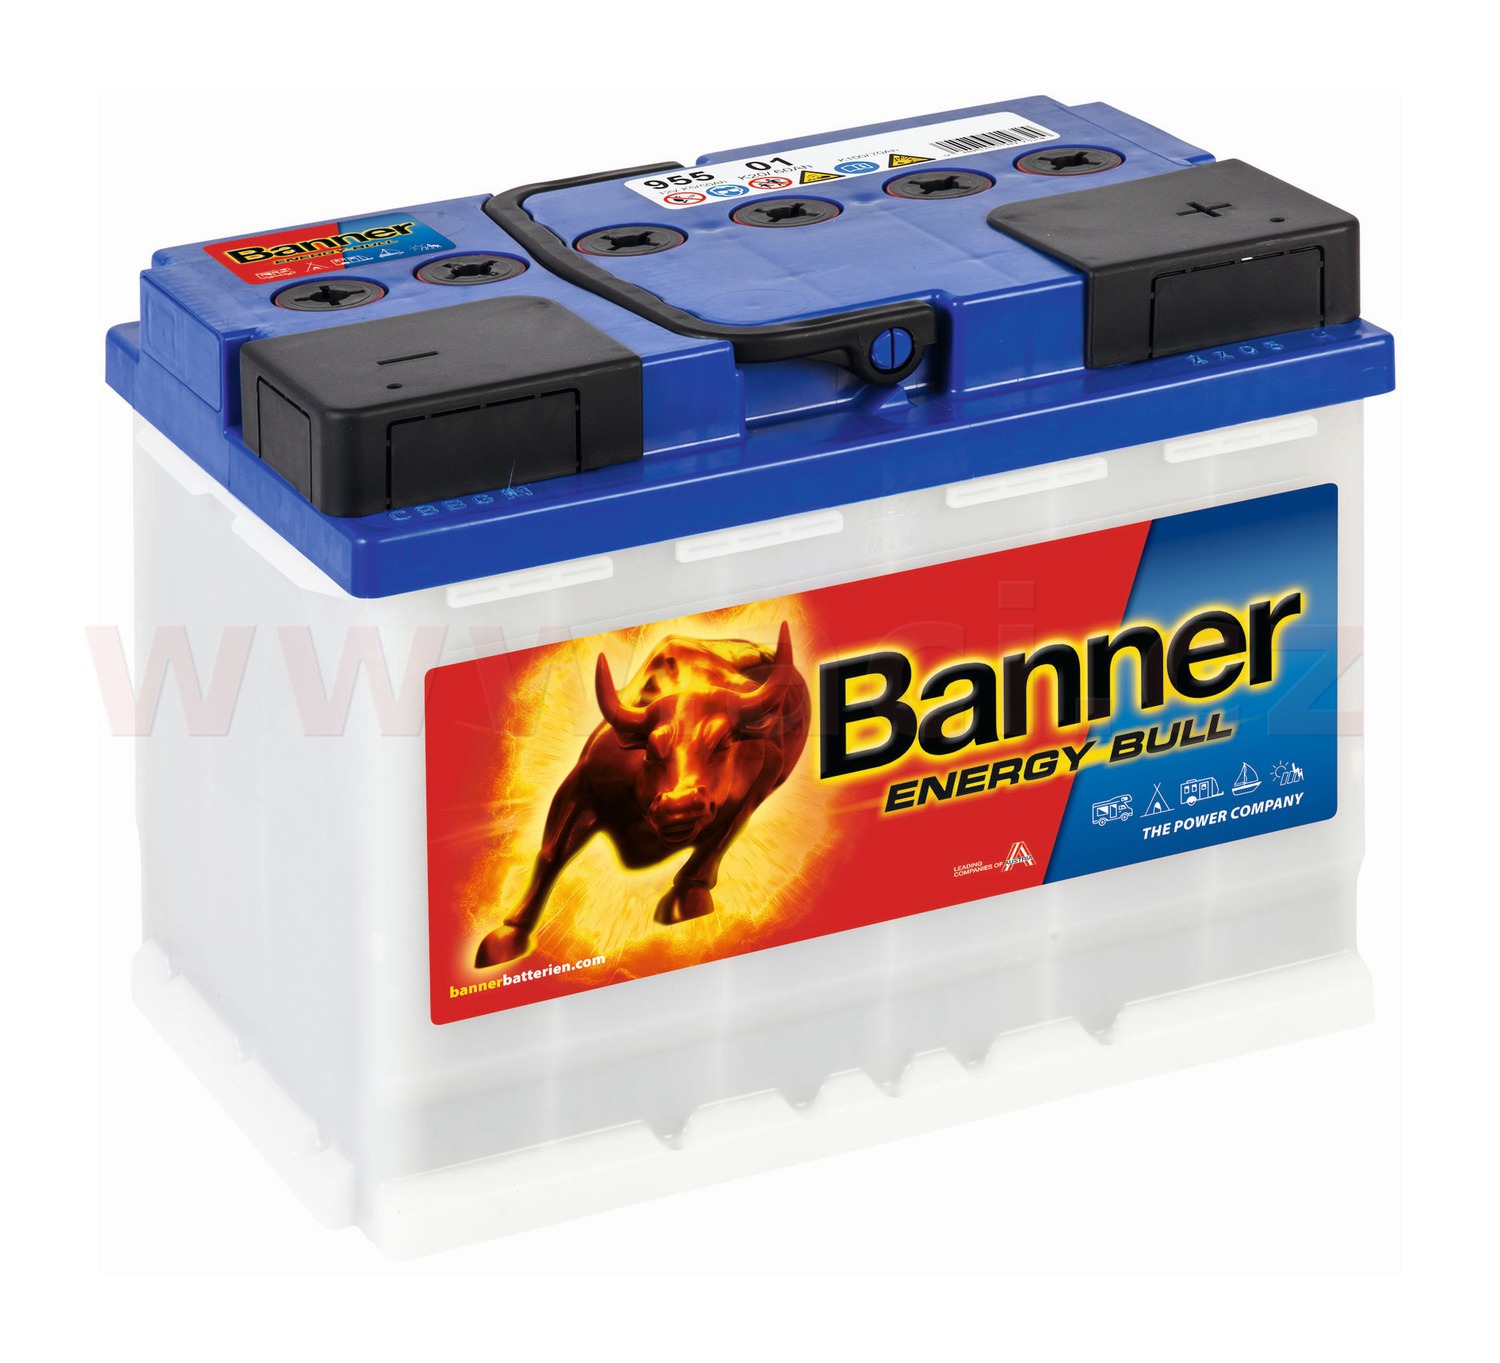 60Ah trakční baterie, pravá BANNER Energy Bull Dual Power 241x175x190